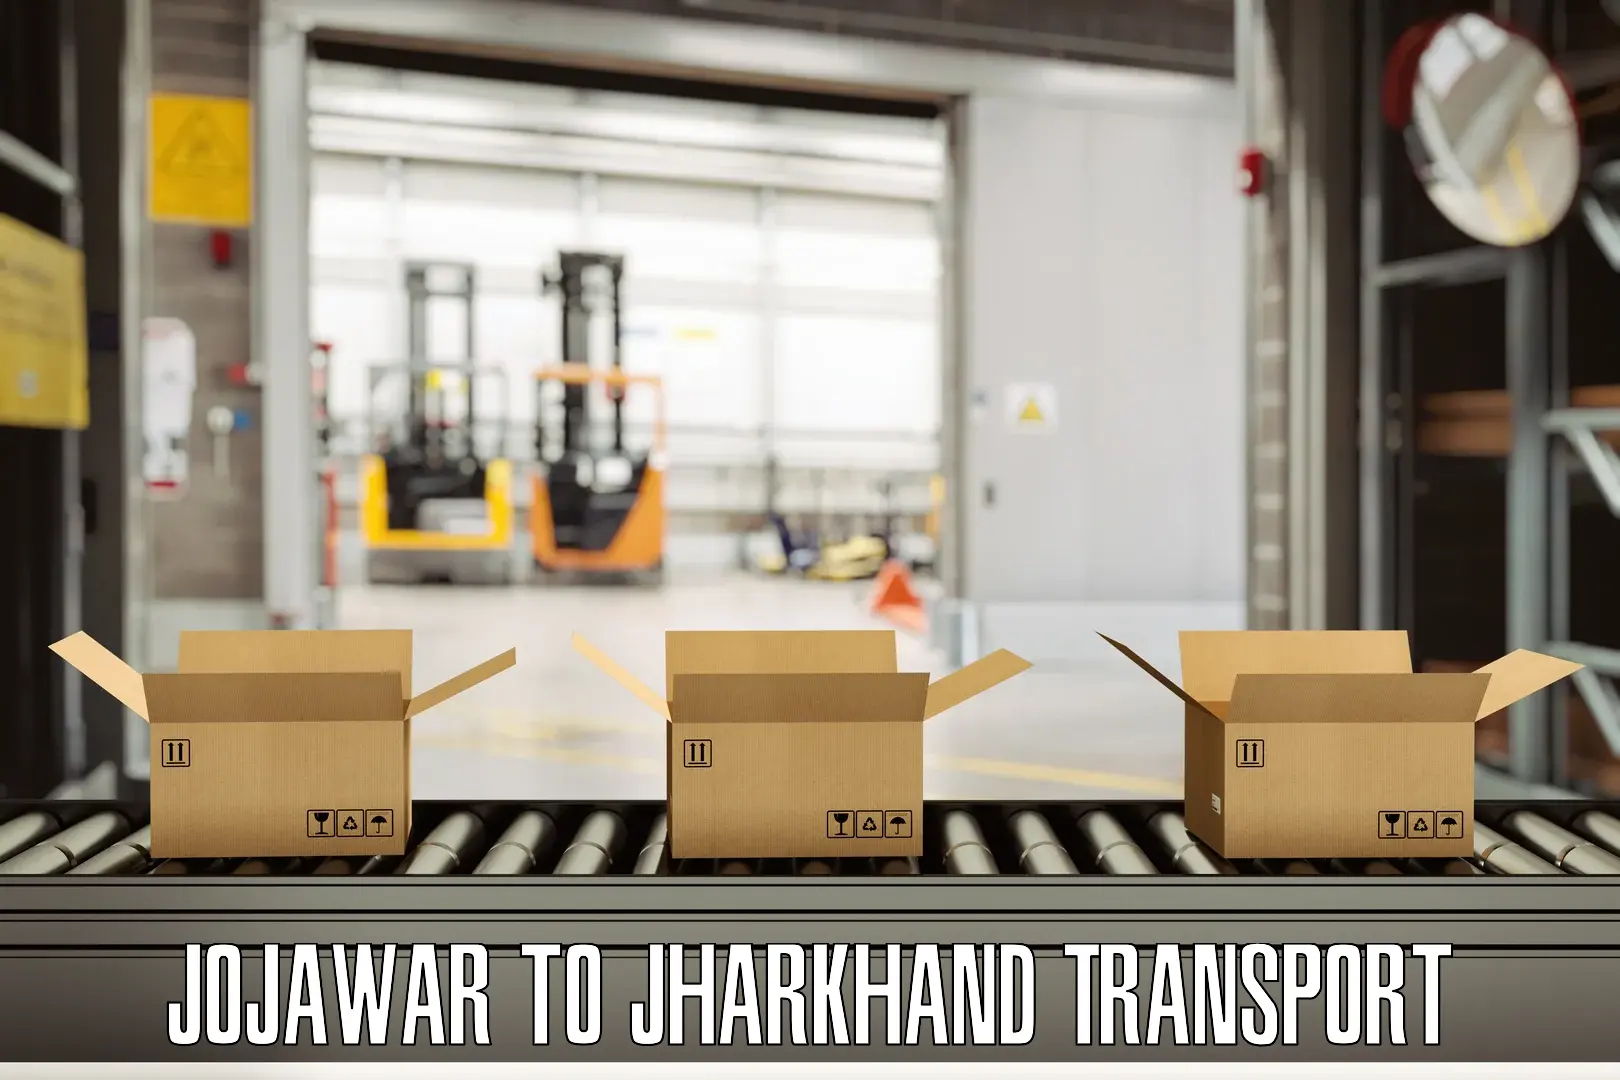 India truck logistics services Jojawar to Isri